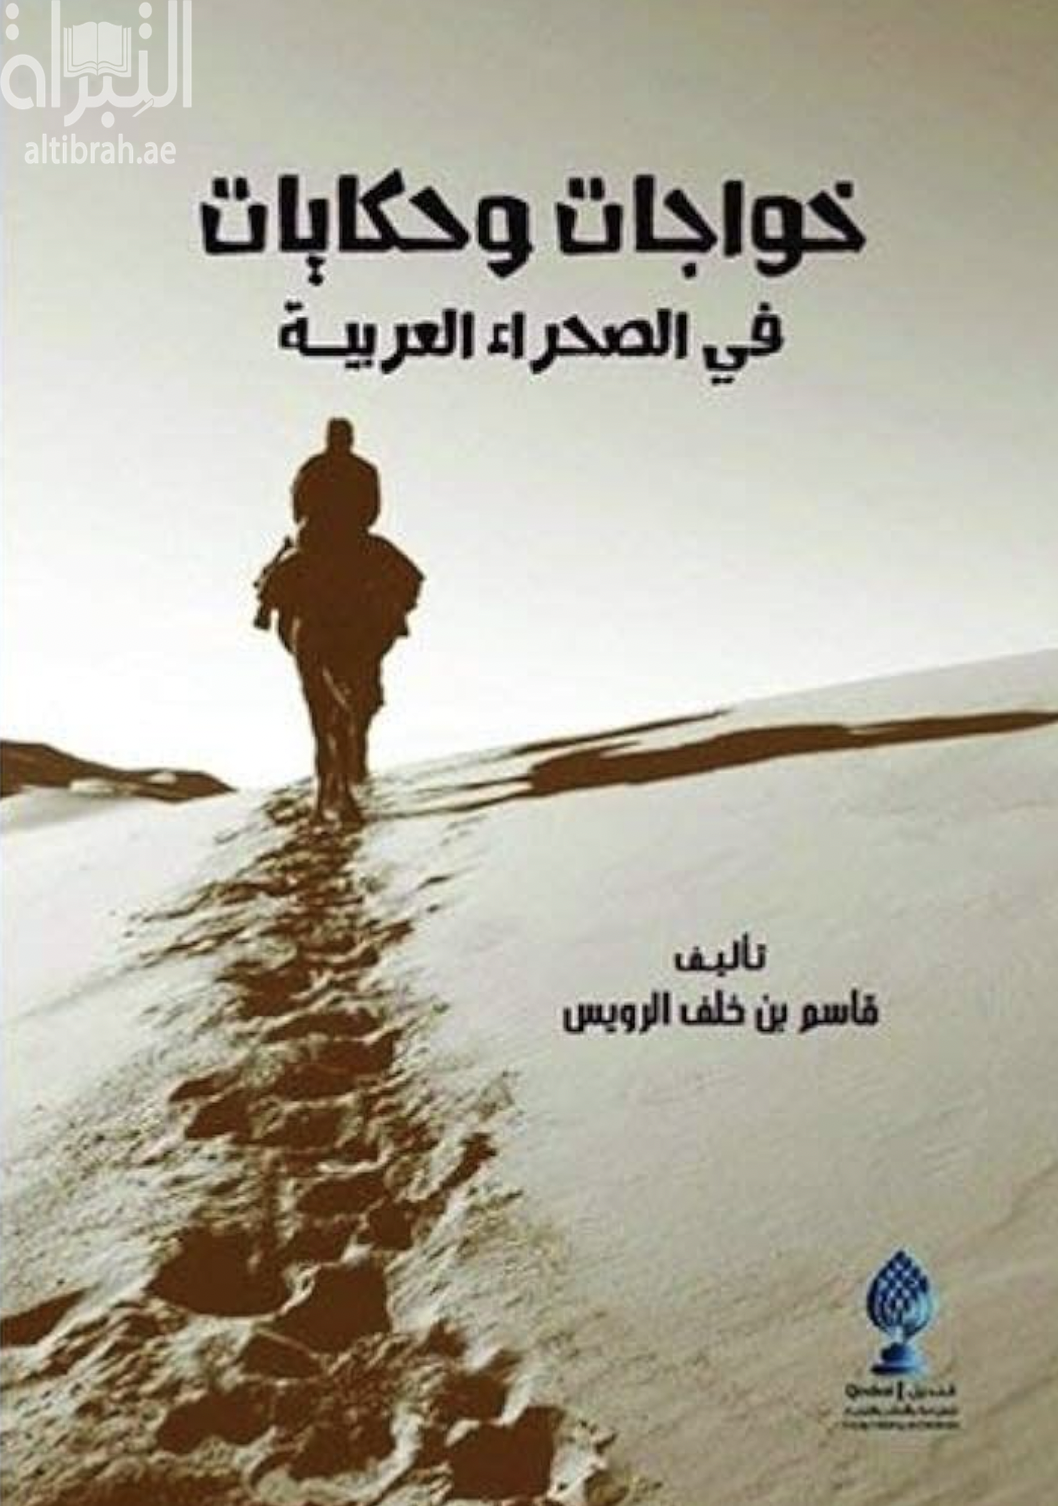 كتاب خواجات وحكايات في الصحراء العربية